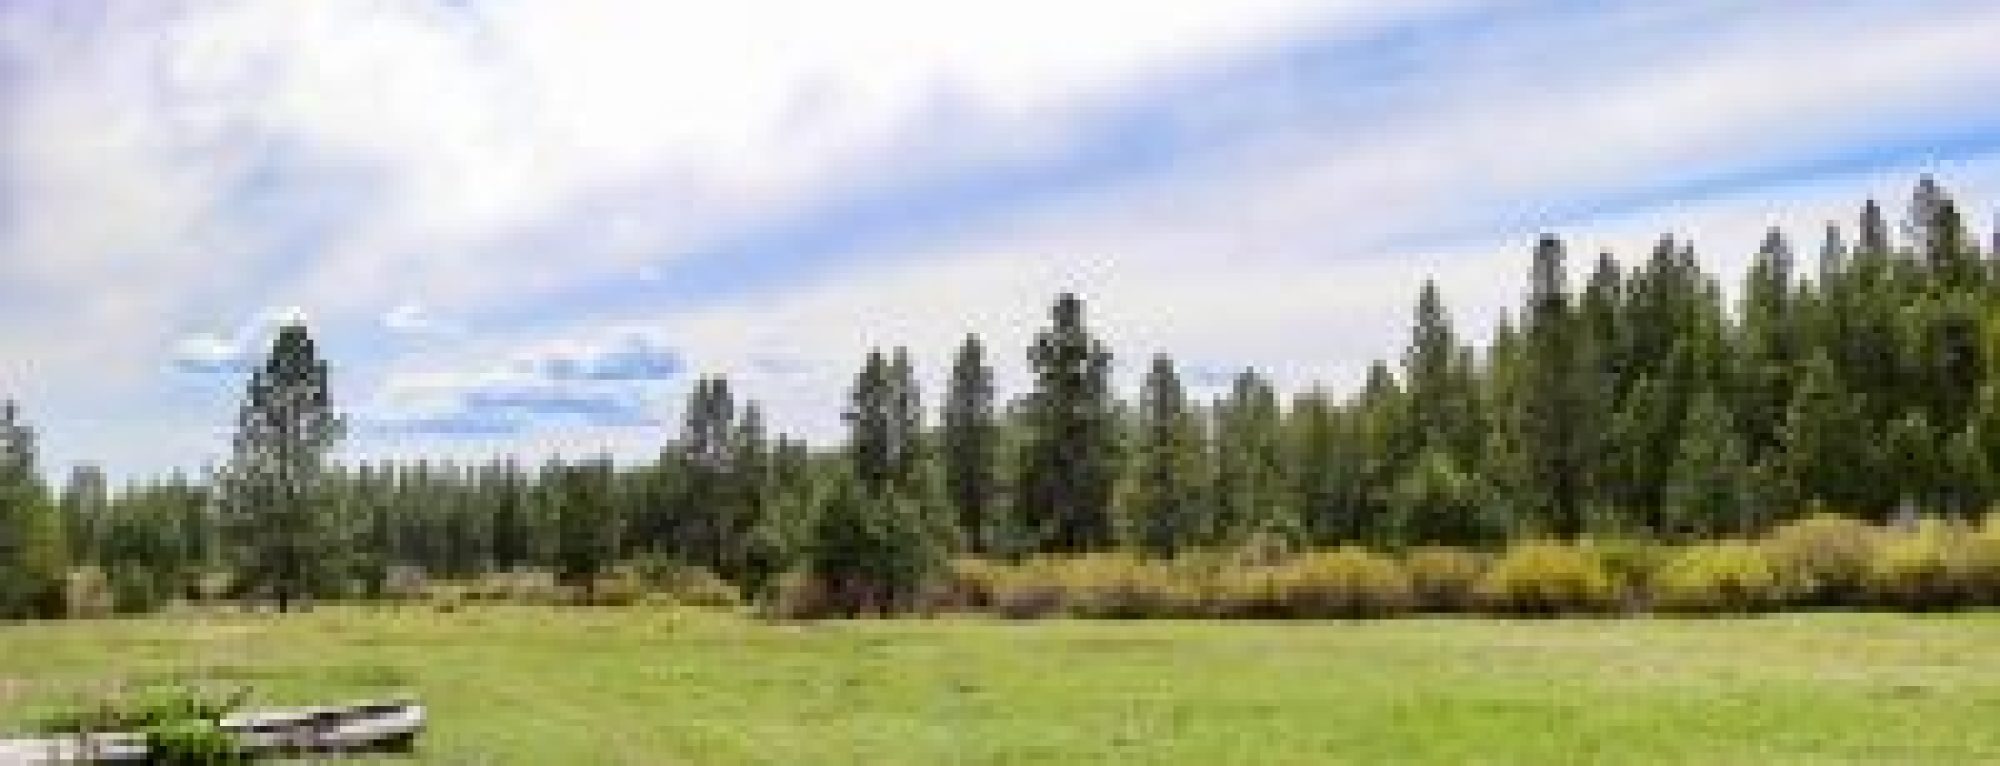 Cascade-Timber-Ranch-7289-300x200